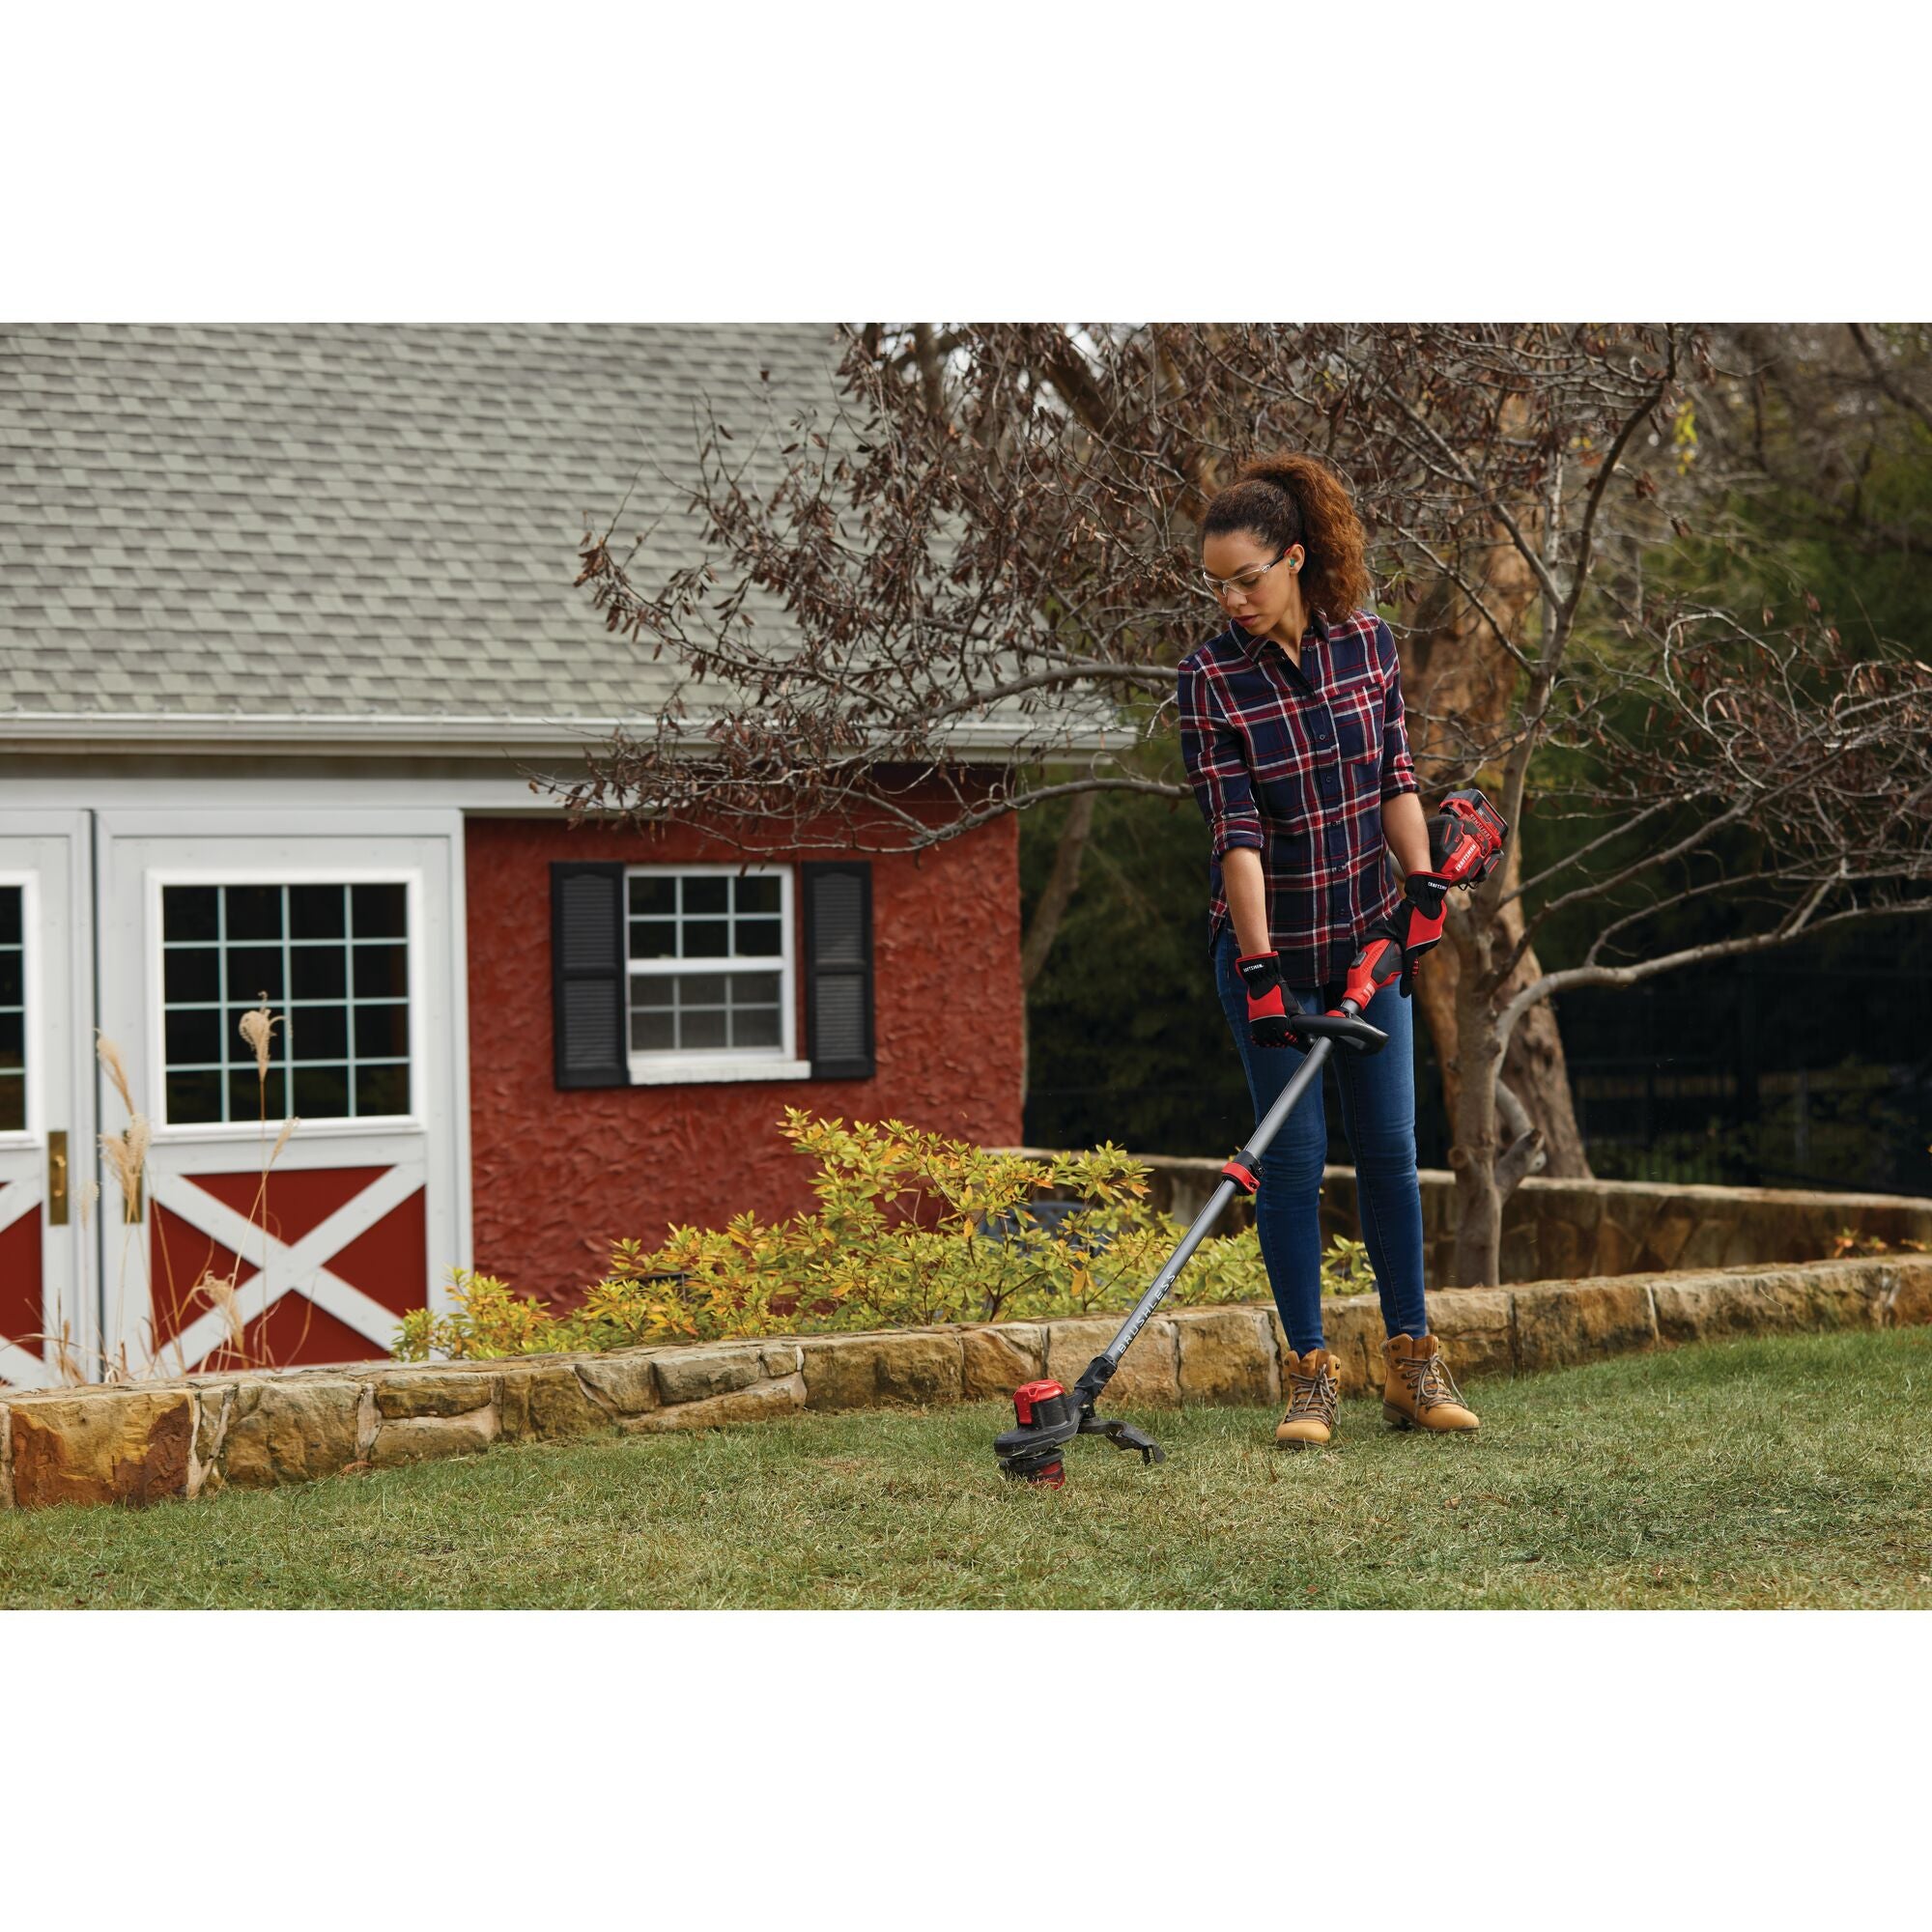 Home & Outdoor - Garden Tools, Mowers & More | CRAFTSMAN | CRAFTSMAN